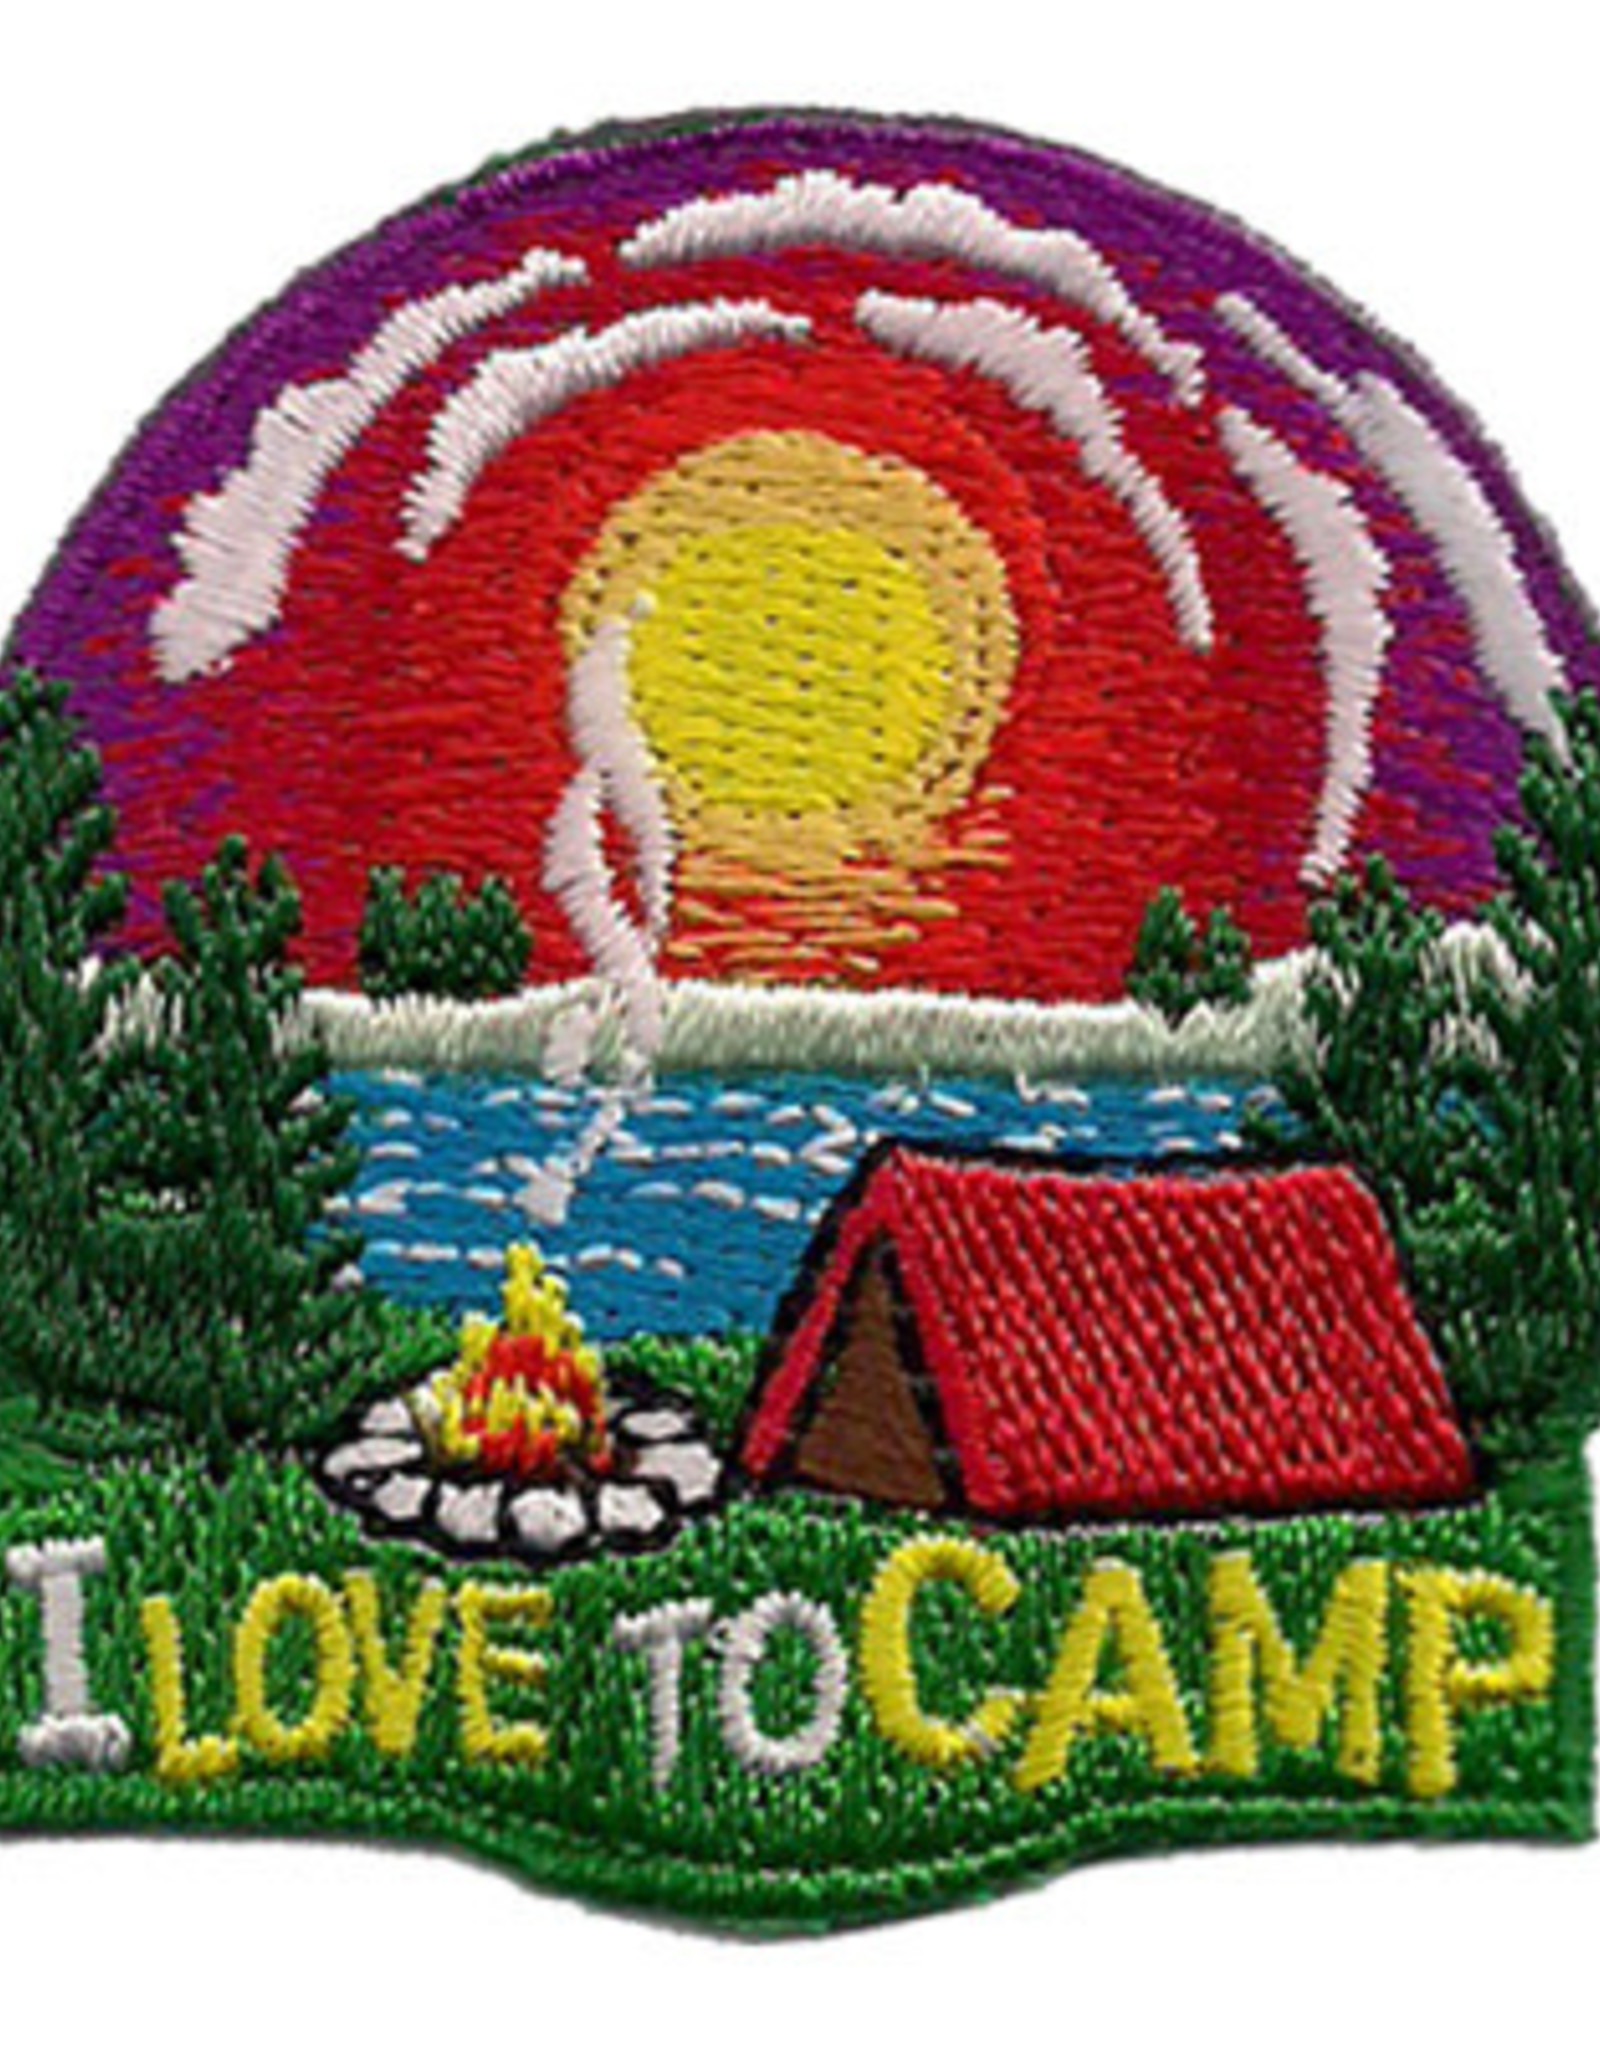 Advantage Emblem & Screen Prnt I Love to Camp Fun Patch